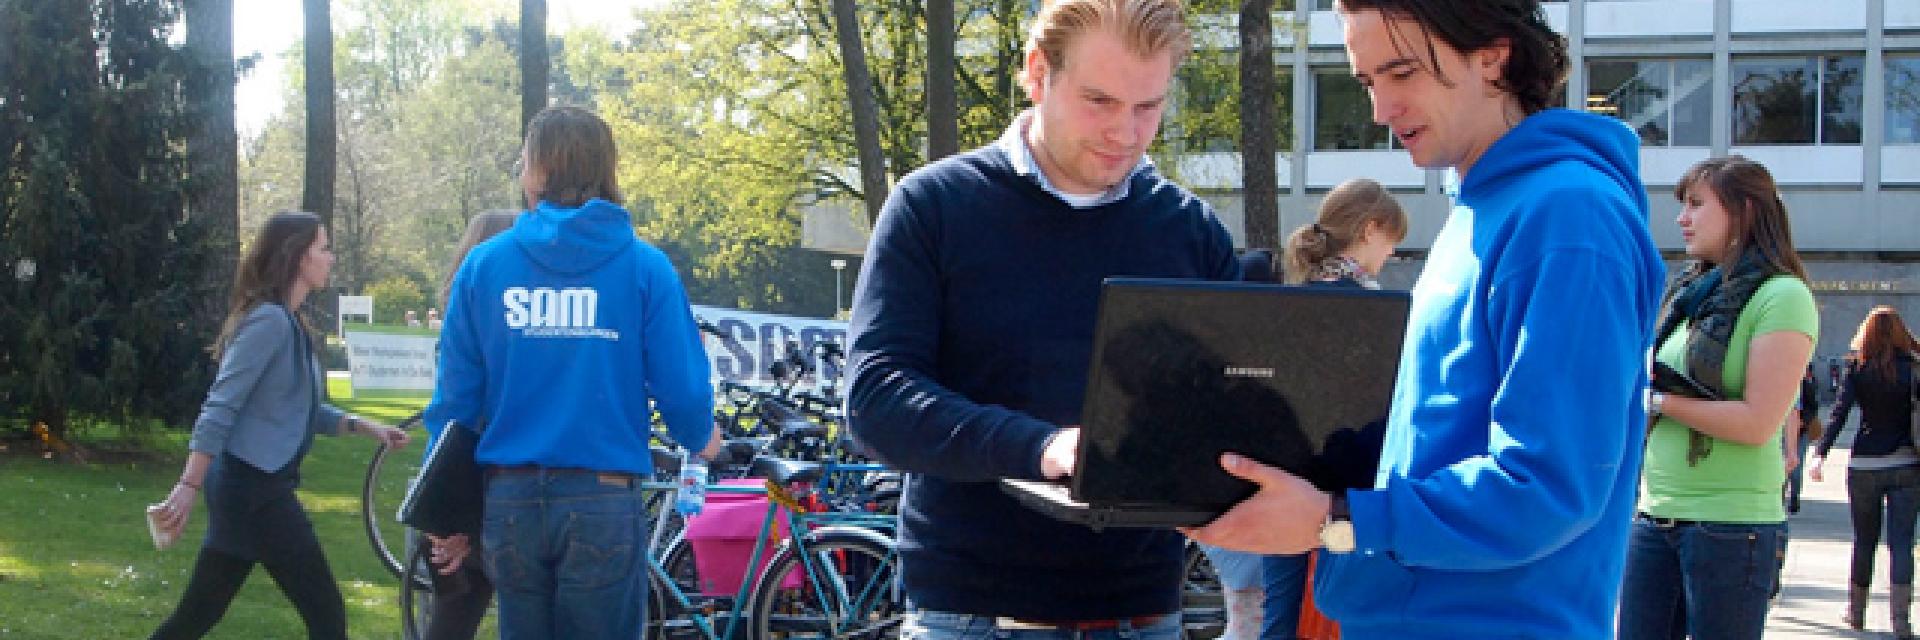 Stemmen voor de verkiezingen van Tilburg University